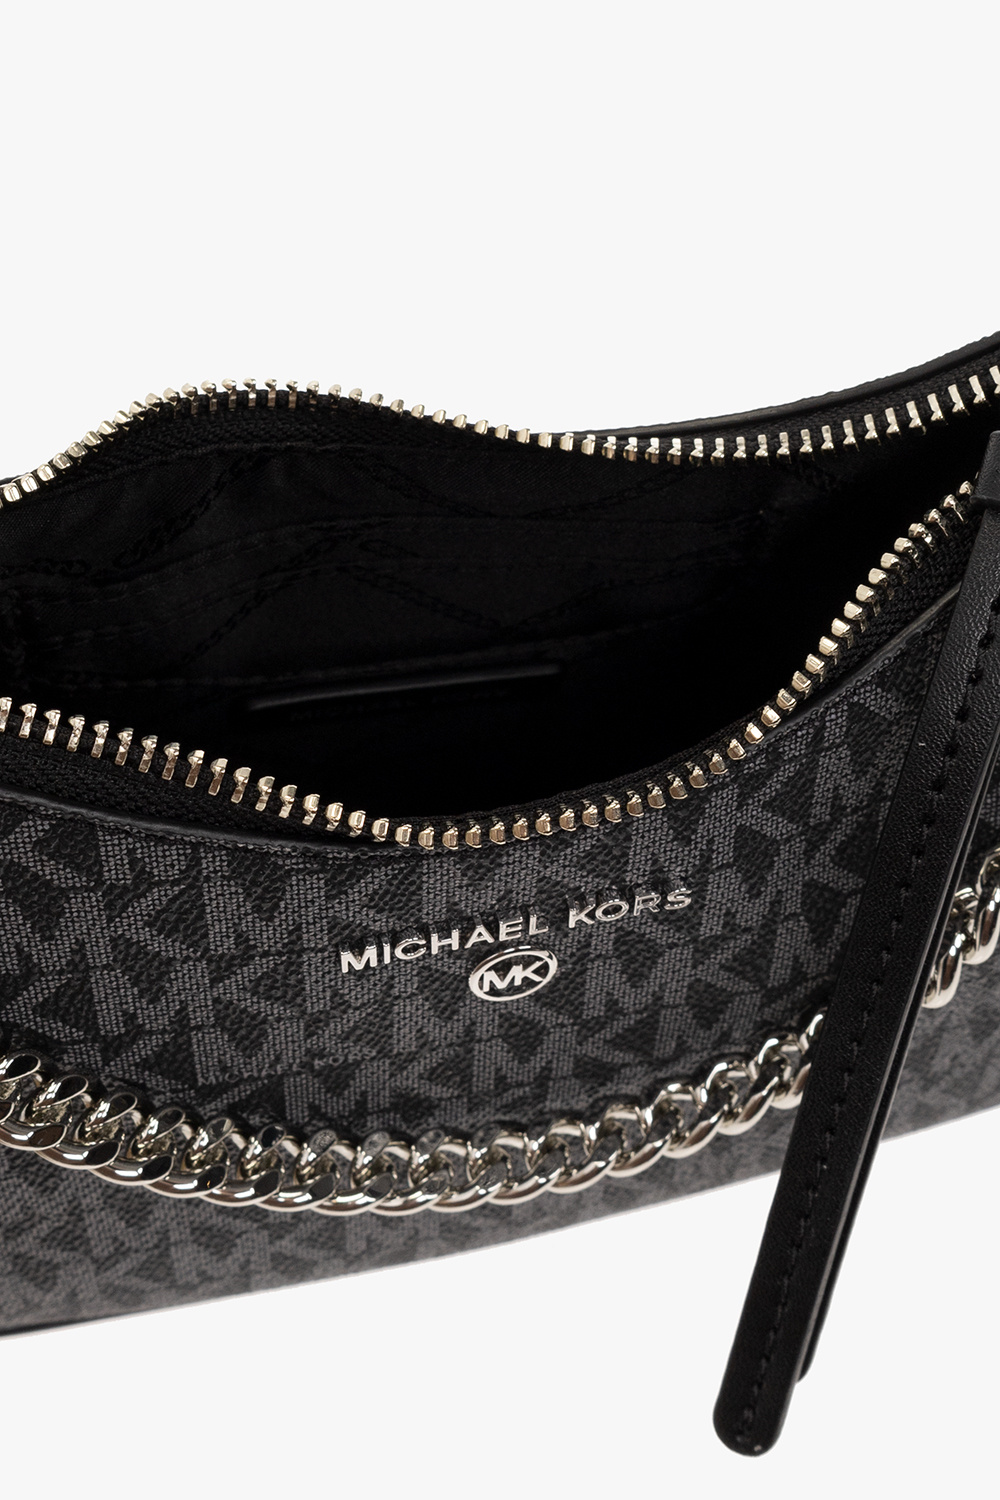 Michael Kors Snakeskin Embossed Leather Studded Chain Strap Mini Crossbody  Bag